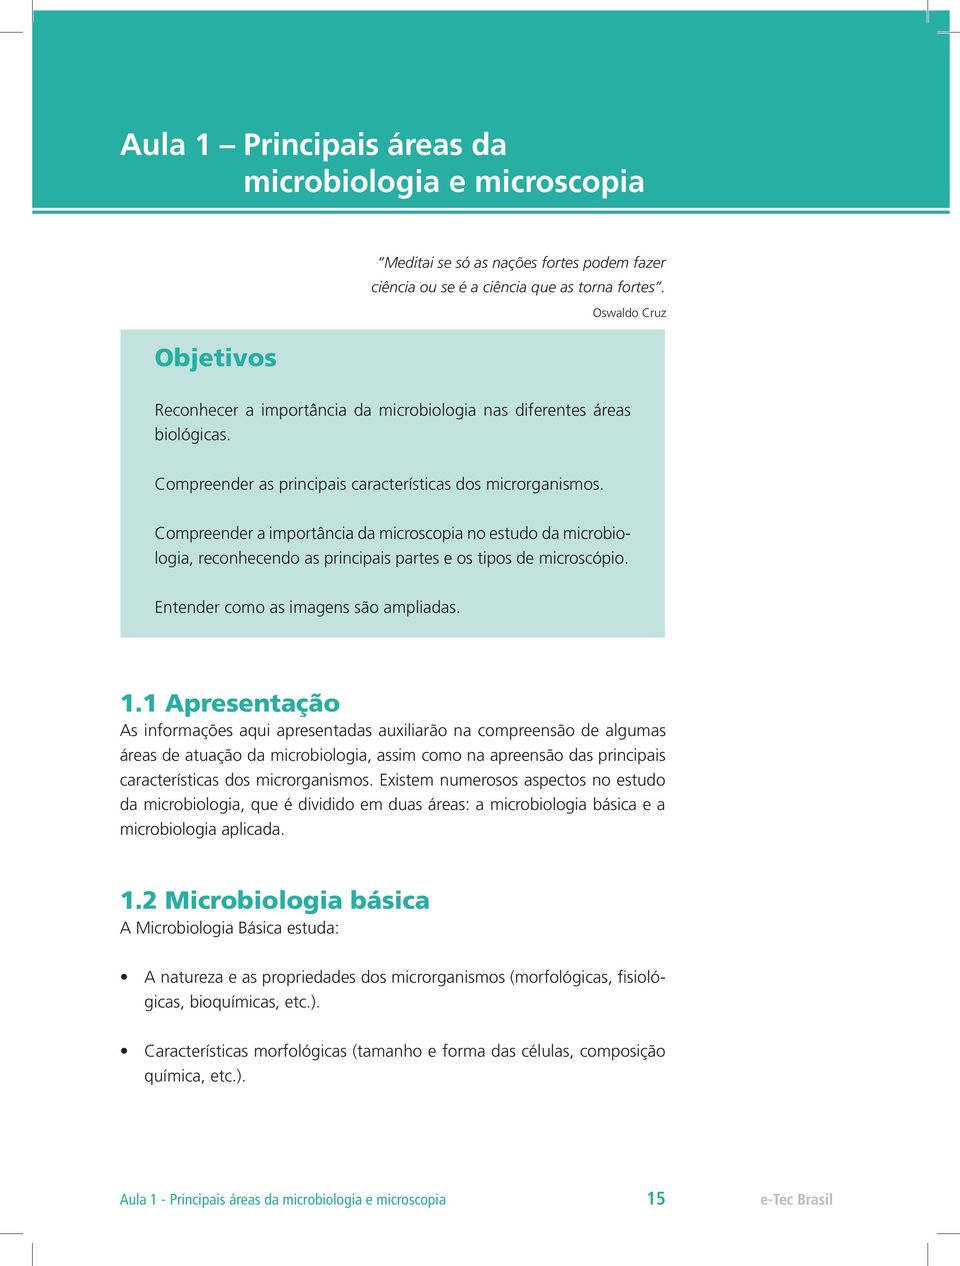 Compreender a importância da microscopia no estudo da microbiologia, reconhecendo as principais partes e os tipos de microscópio. Entender como as imagens são ampliadas. 1.